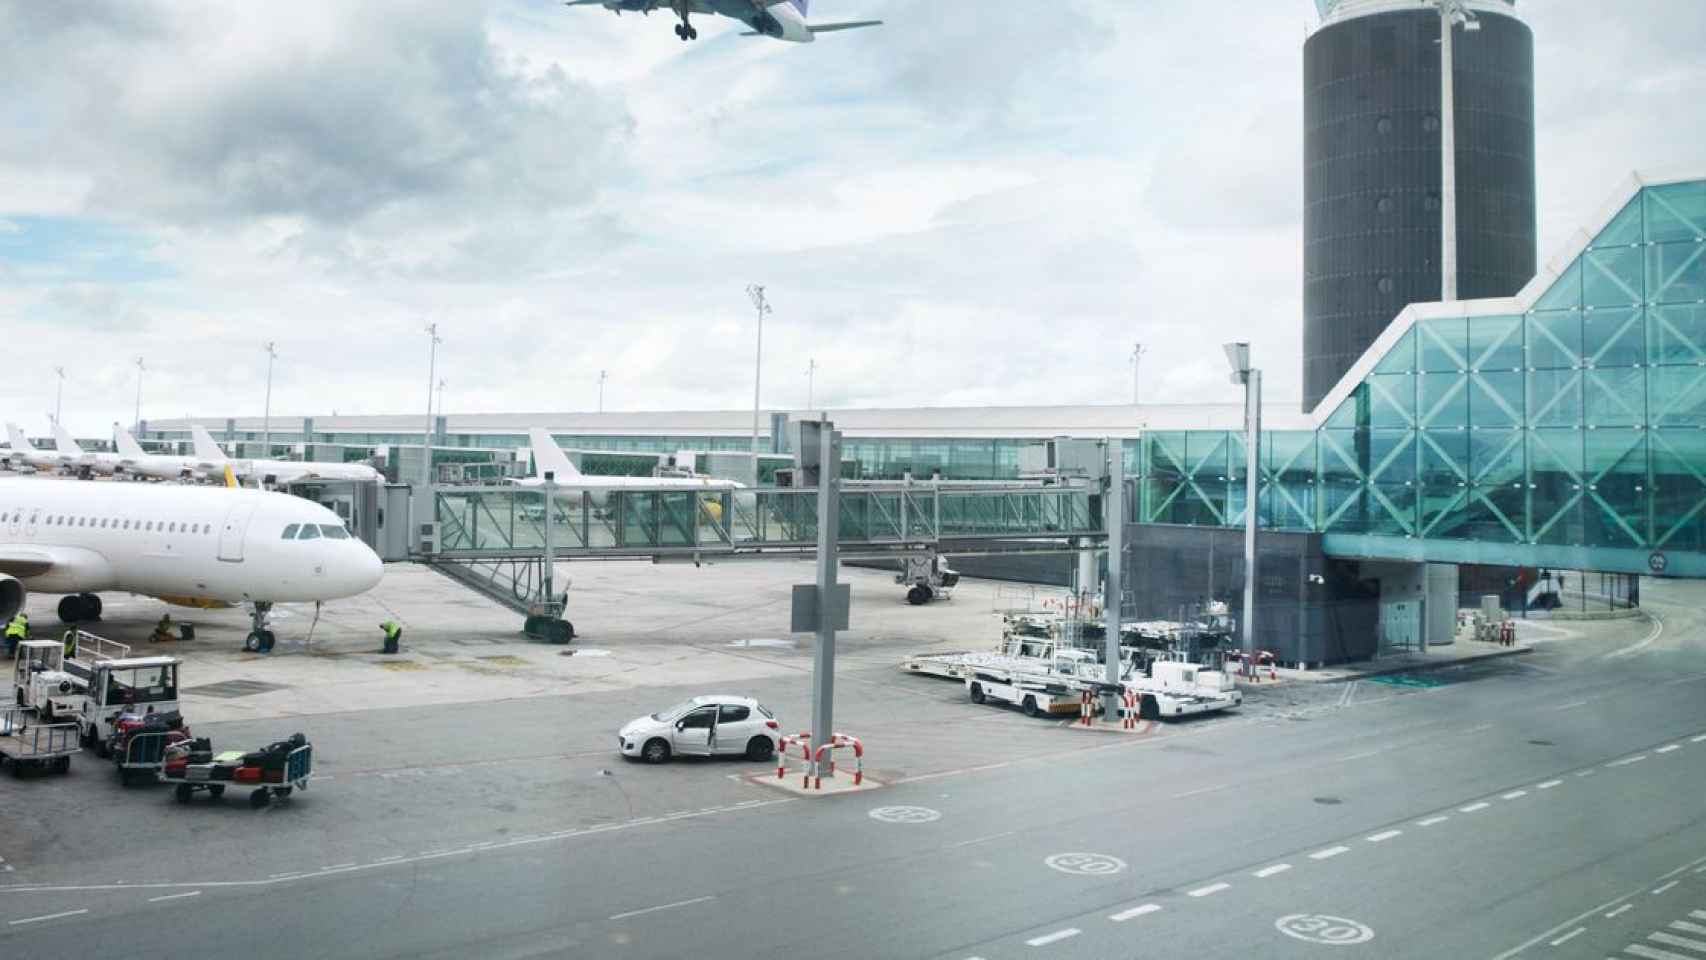 Plano general del Aeropuerto con un avión de la compañía Vueling